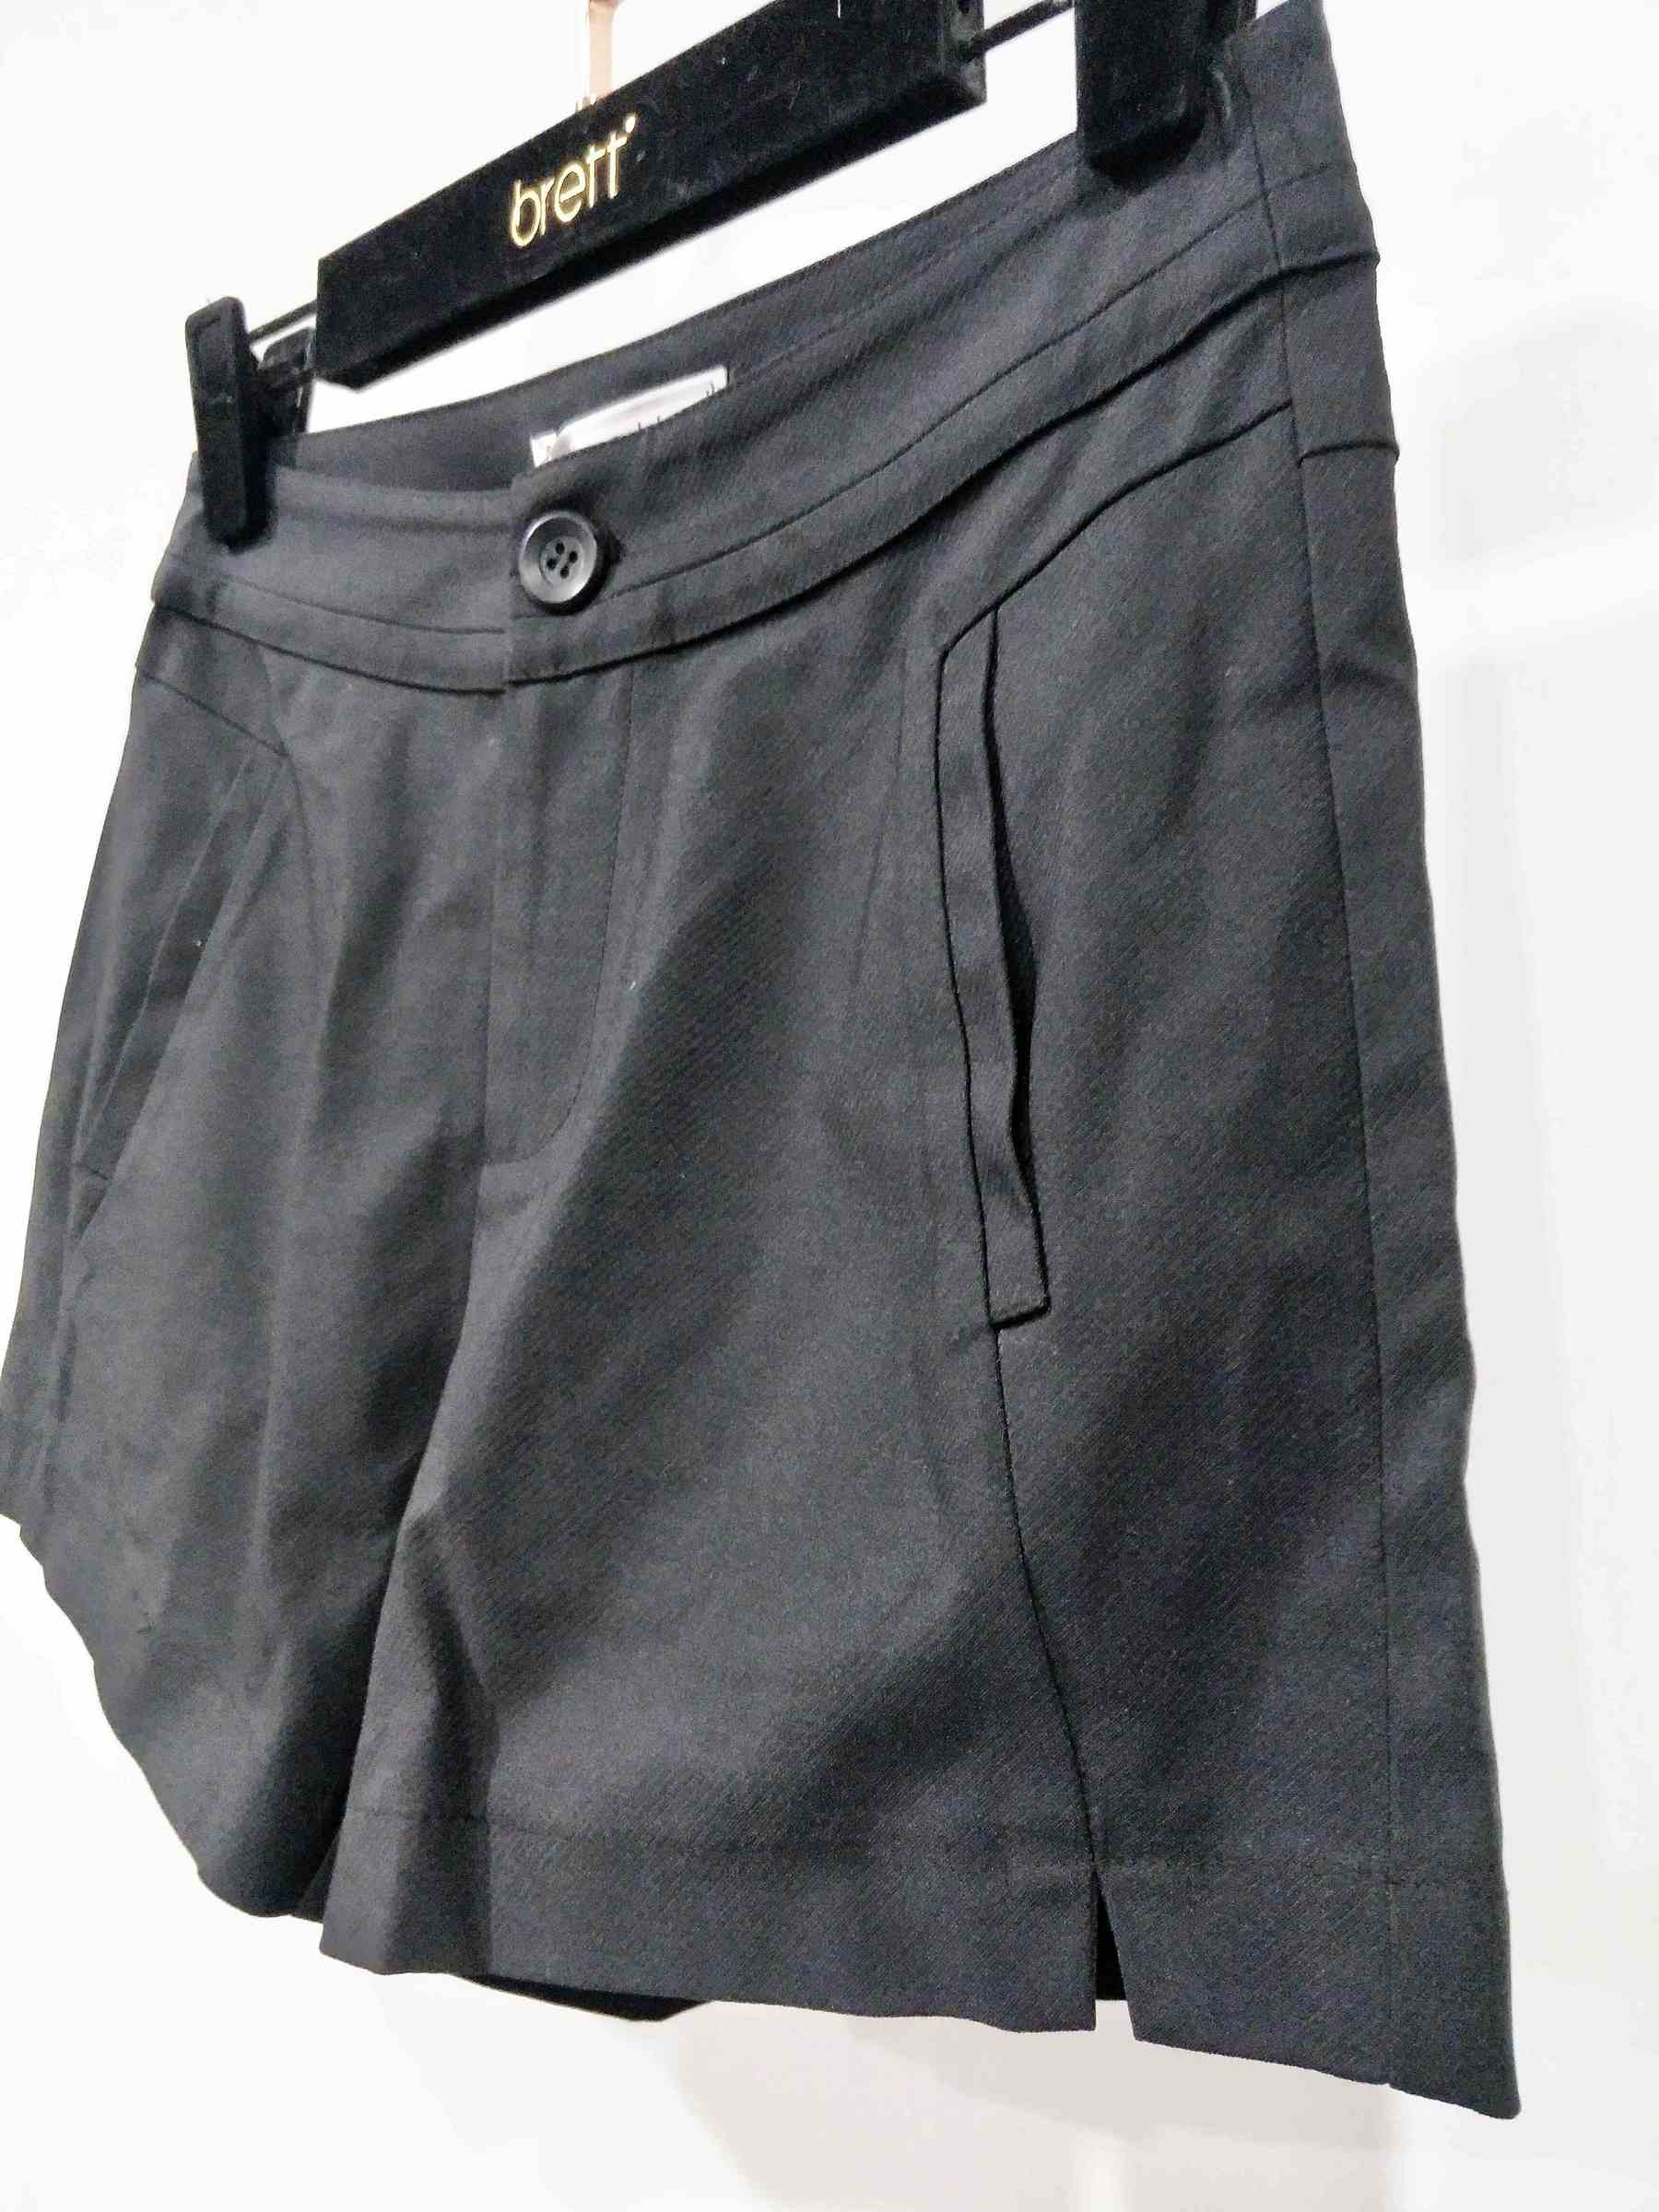 A62185-黑色斜紋氣質短褲-女裝代工 (2).jpg